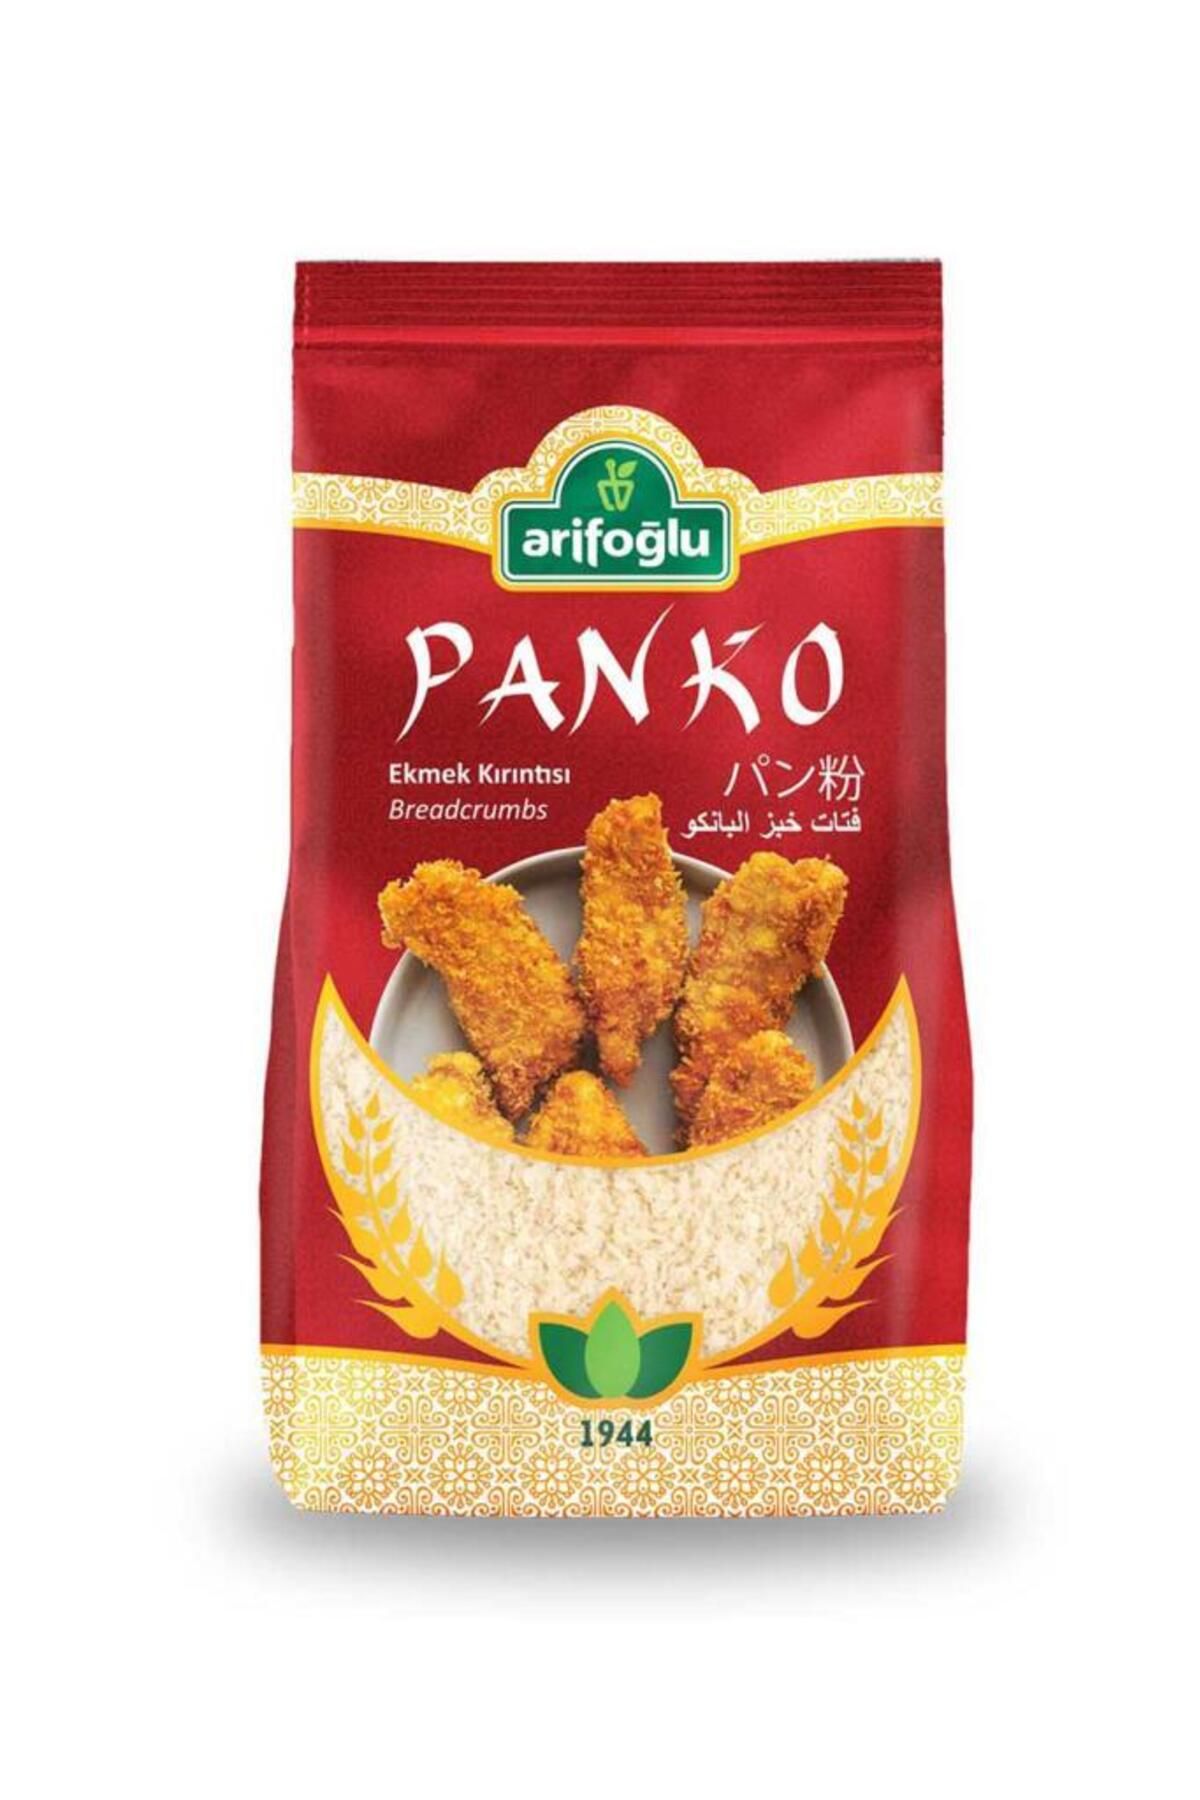 Arifoğlu Panko - Ekmek Kırıntısı 200g